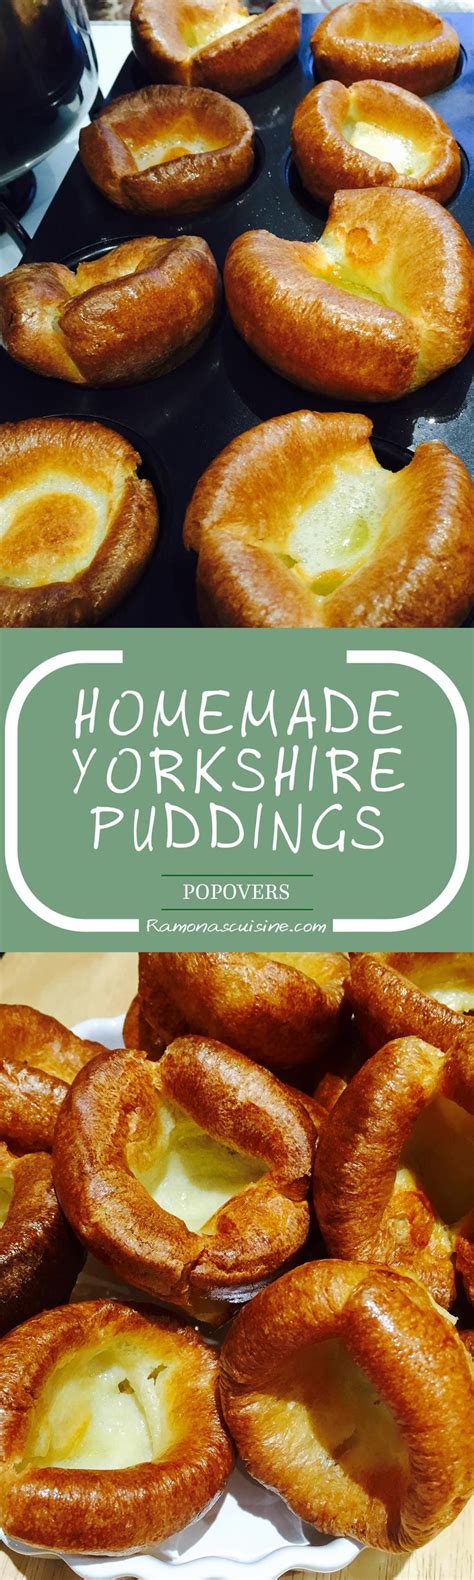 Best Homemade Yorkshire Puddings Ramonas Cuisine Recipe Homemade